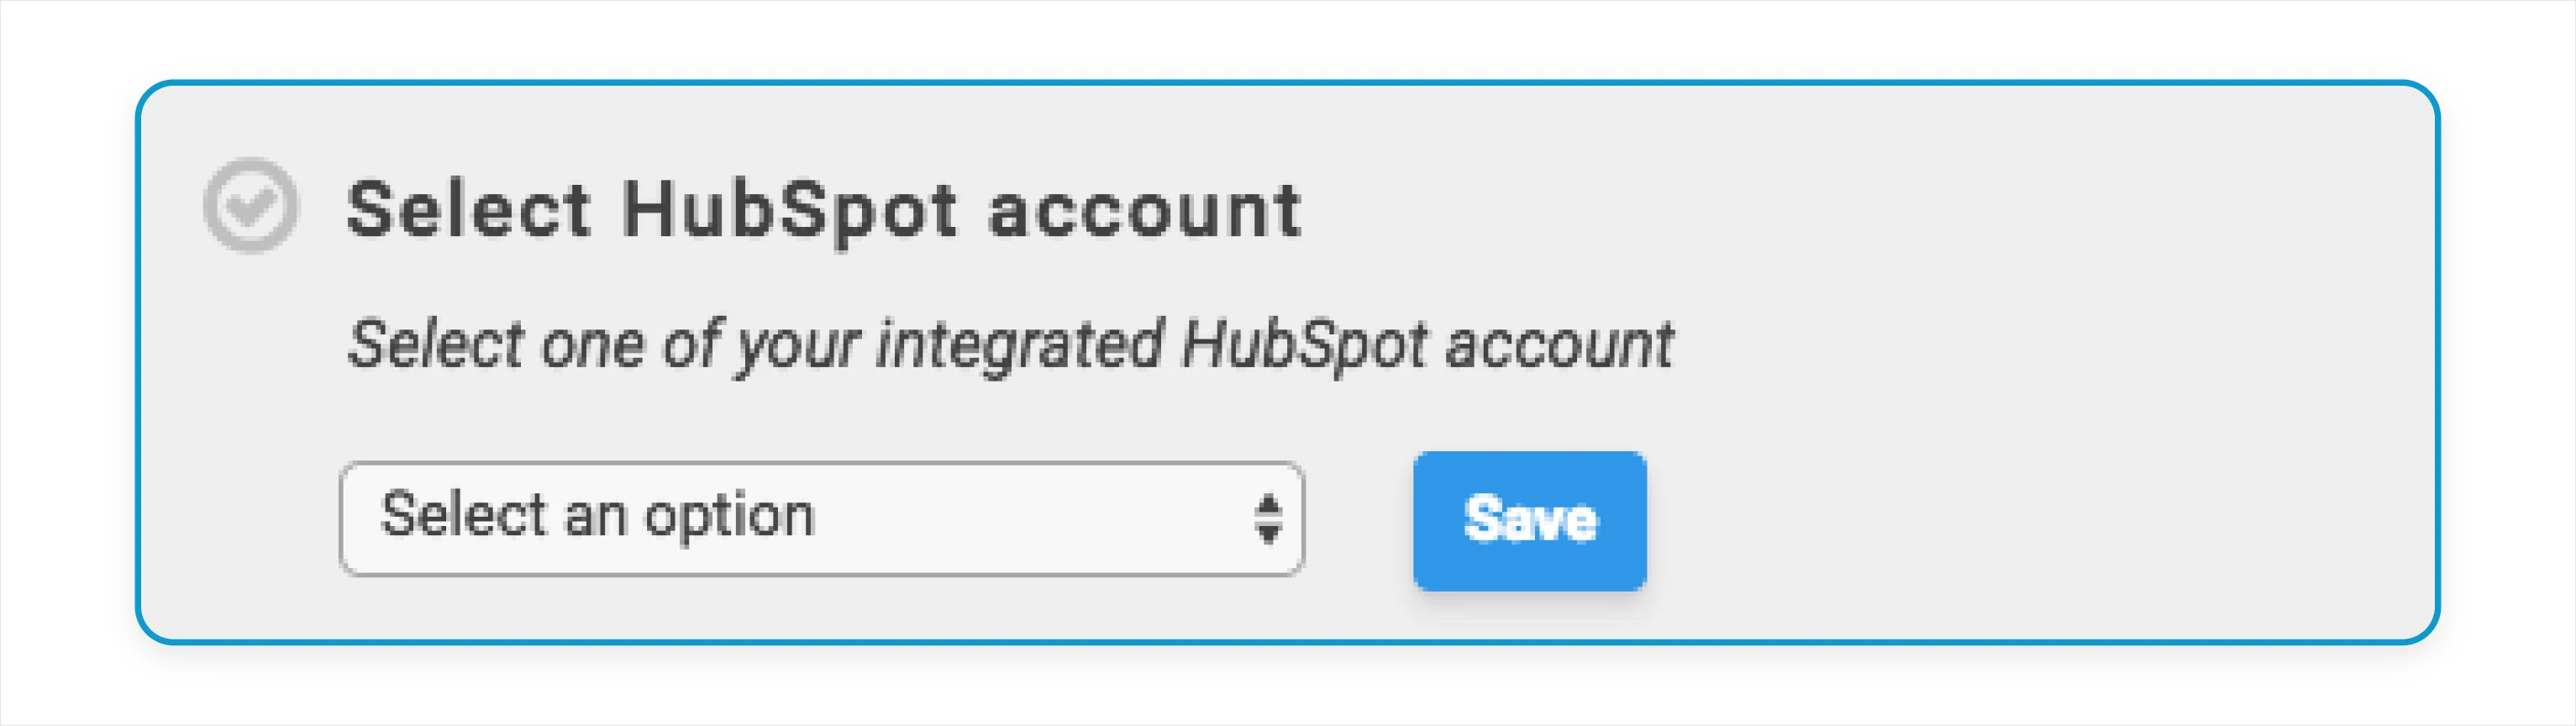 Select a Hubspot account